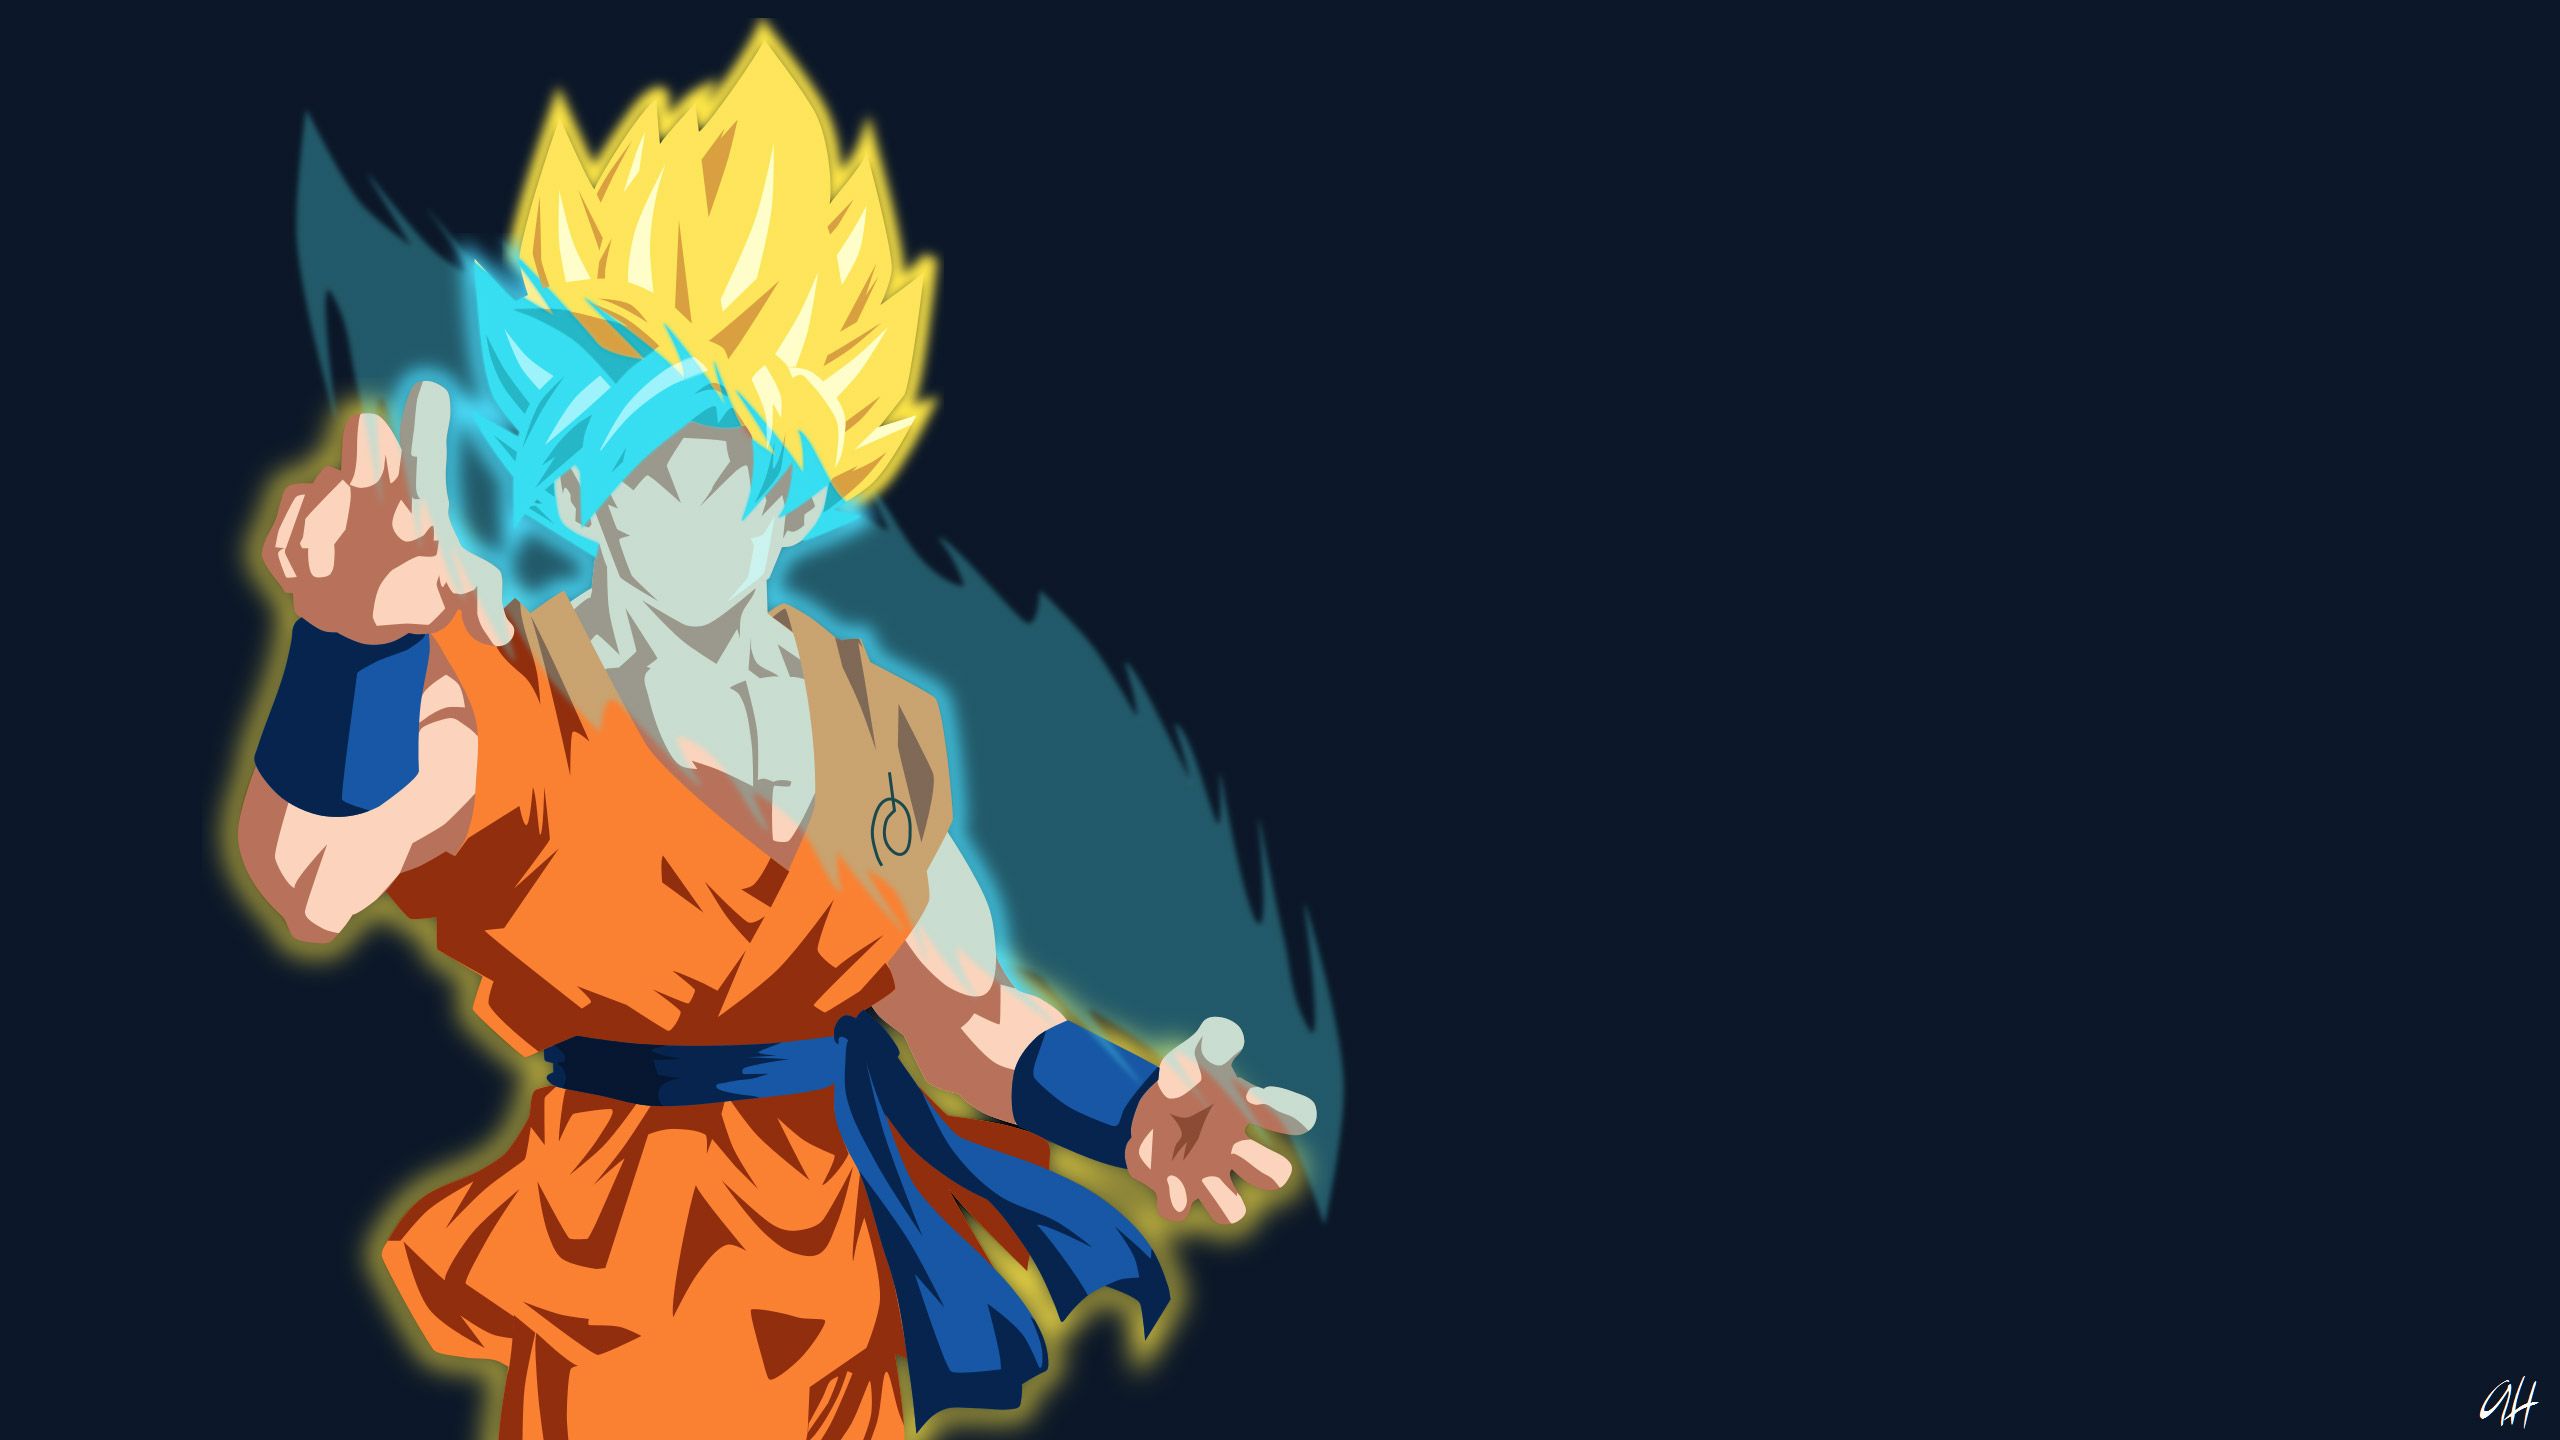 Goku Minimalist, HD Anime, 4k Wallpapers, Image, Backgrounds